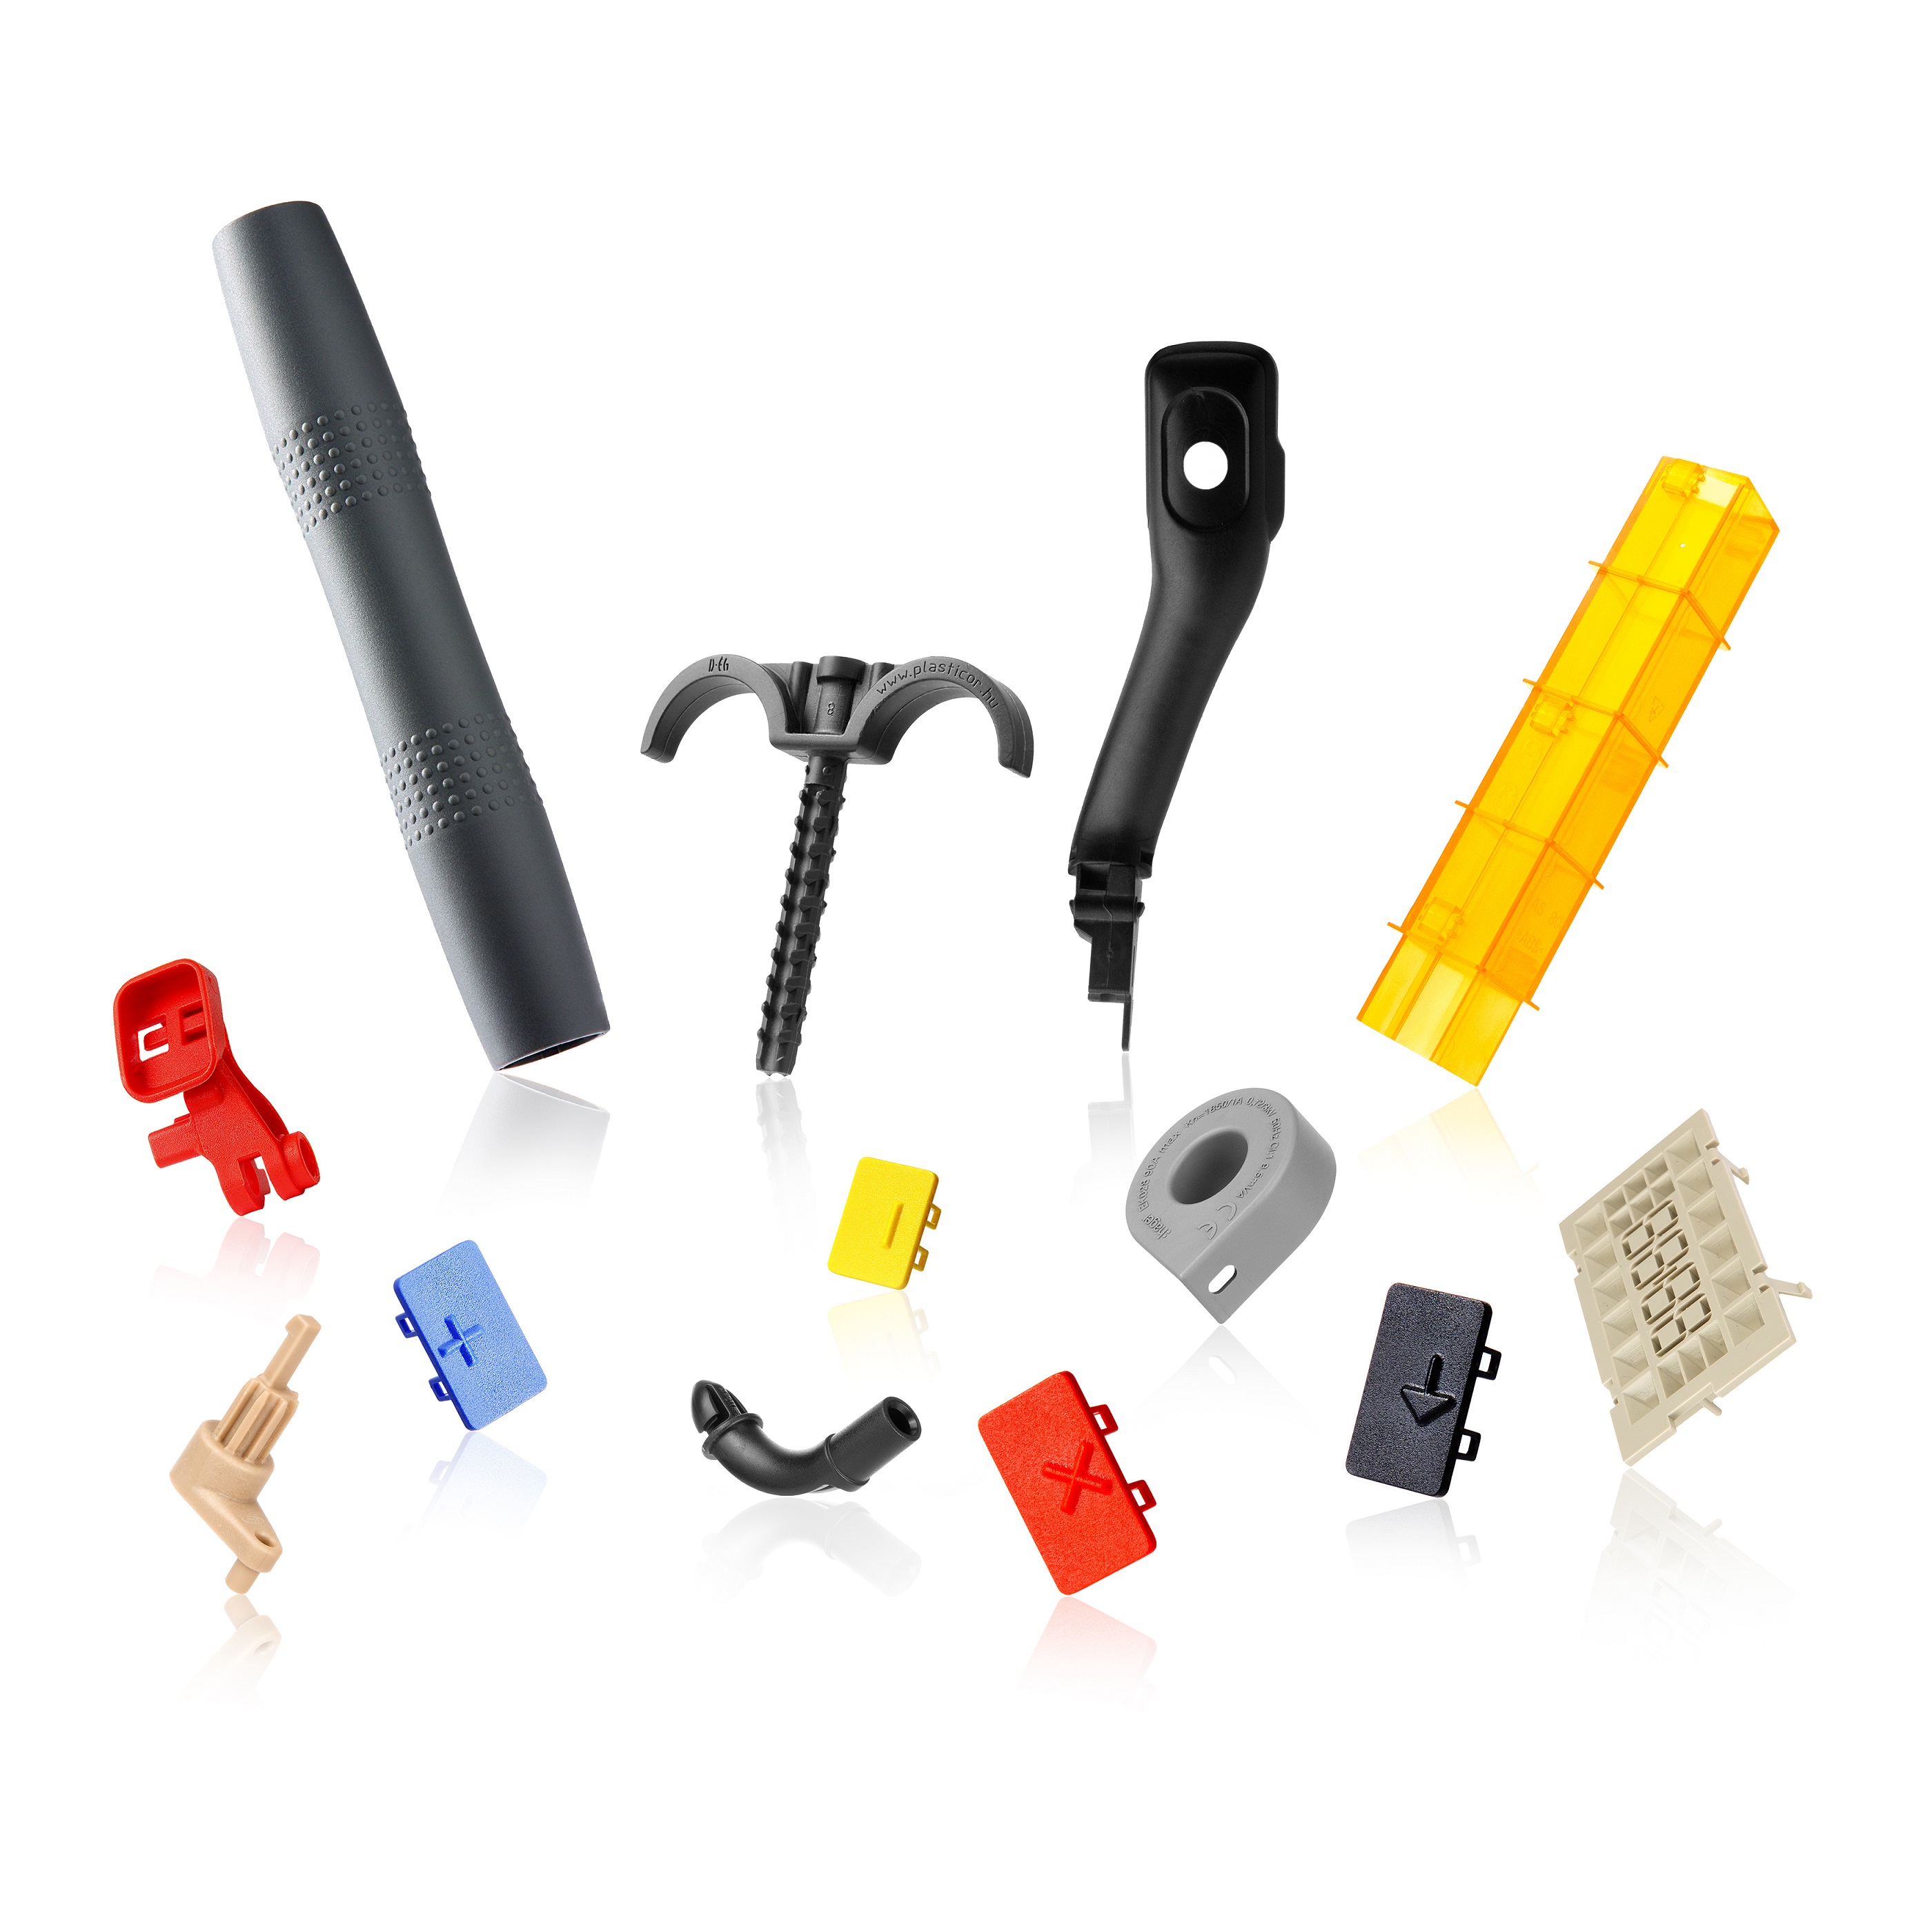 Plasticor productporfolio plastic parts